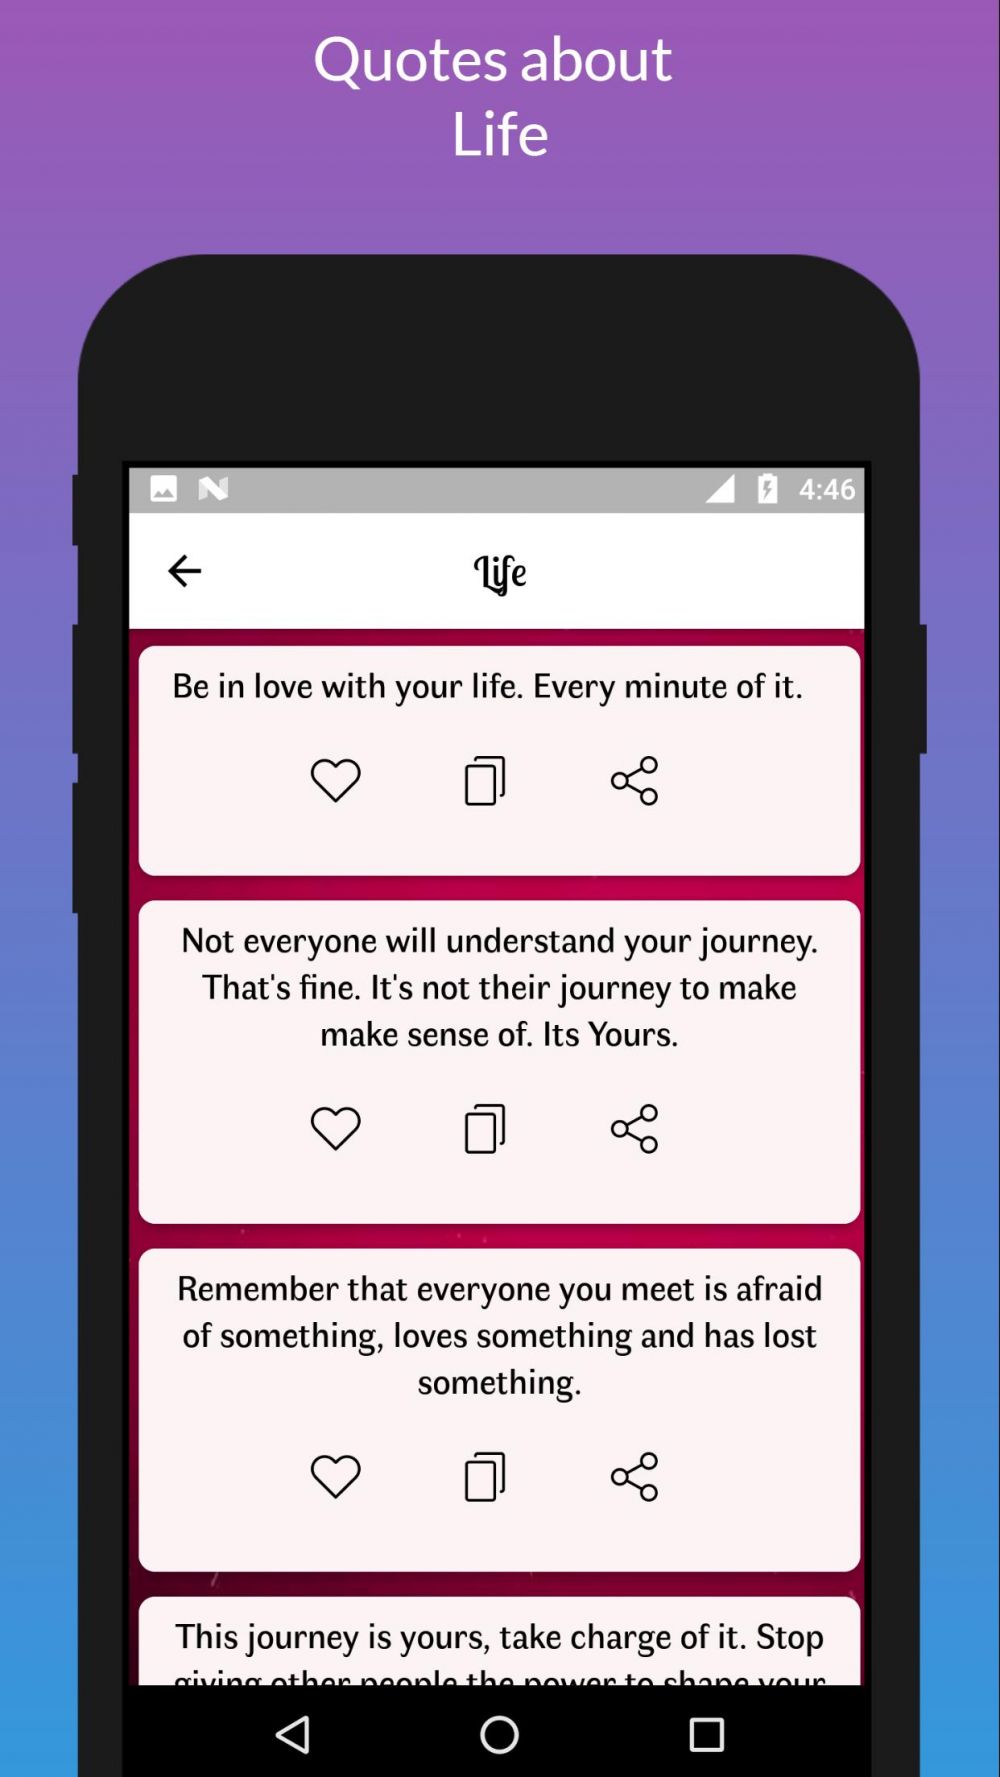 10 Aplikasi pembuat quotes terbaik, mudah, dan gratis